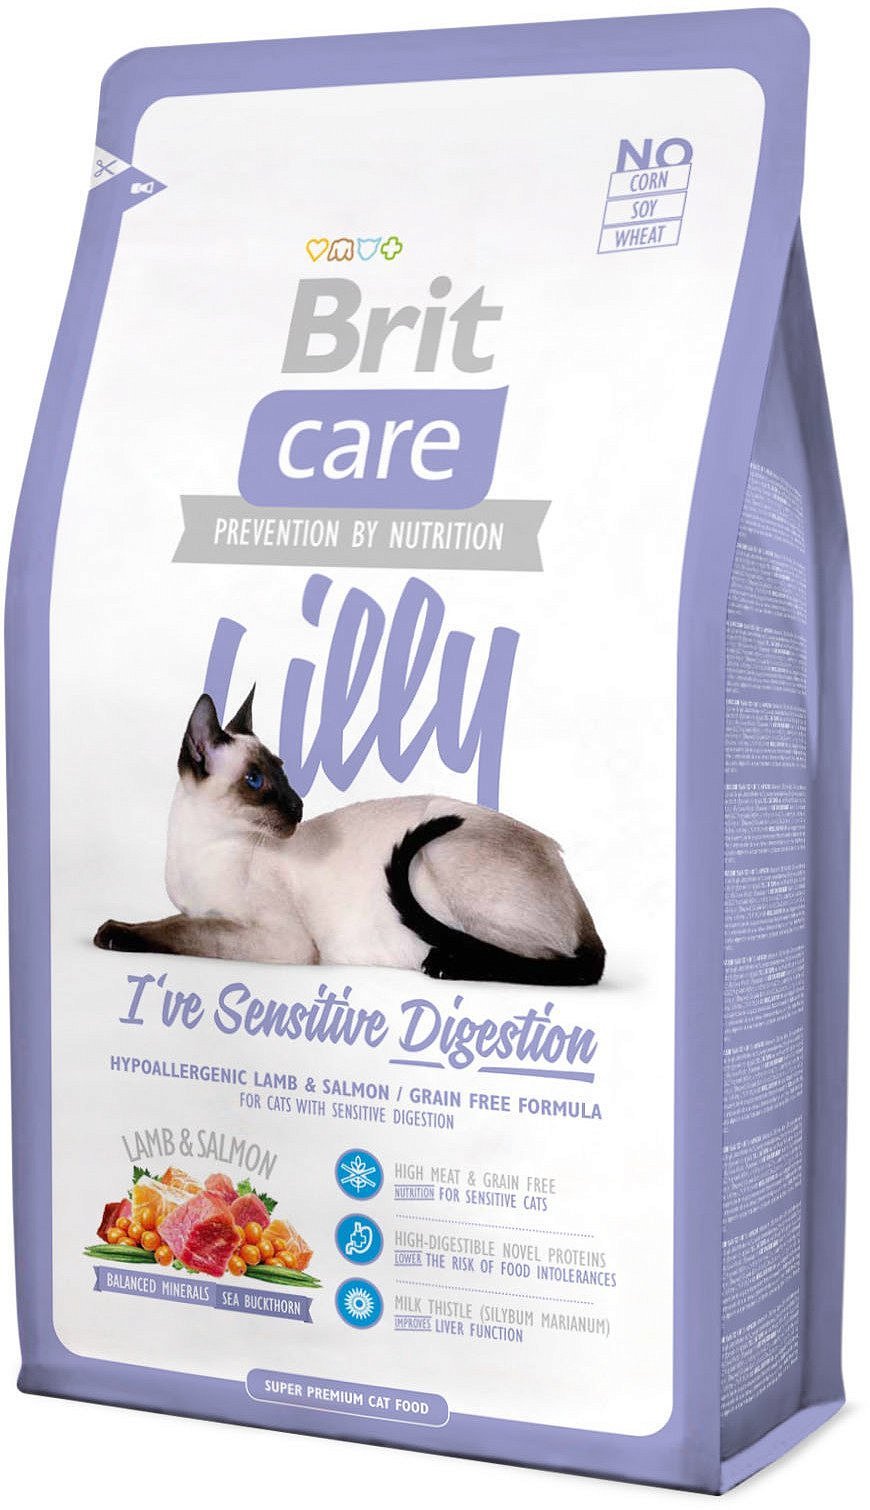 Care Cat Lilly Sensitive Digestion корм для кошек с чувствительным  пищеварением, Brit цена от 379 руб. с доставкой по Москве – купить в  интернет-магазине Dino Zoo: цены, фото, отзывы